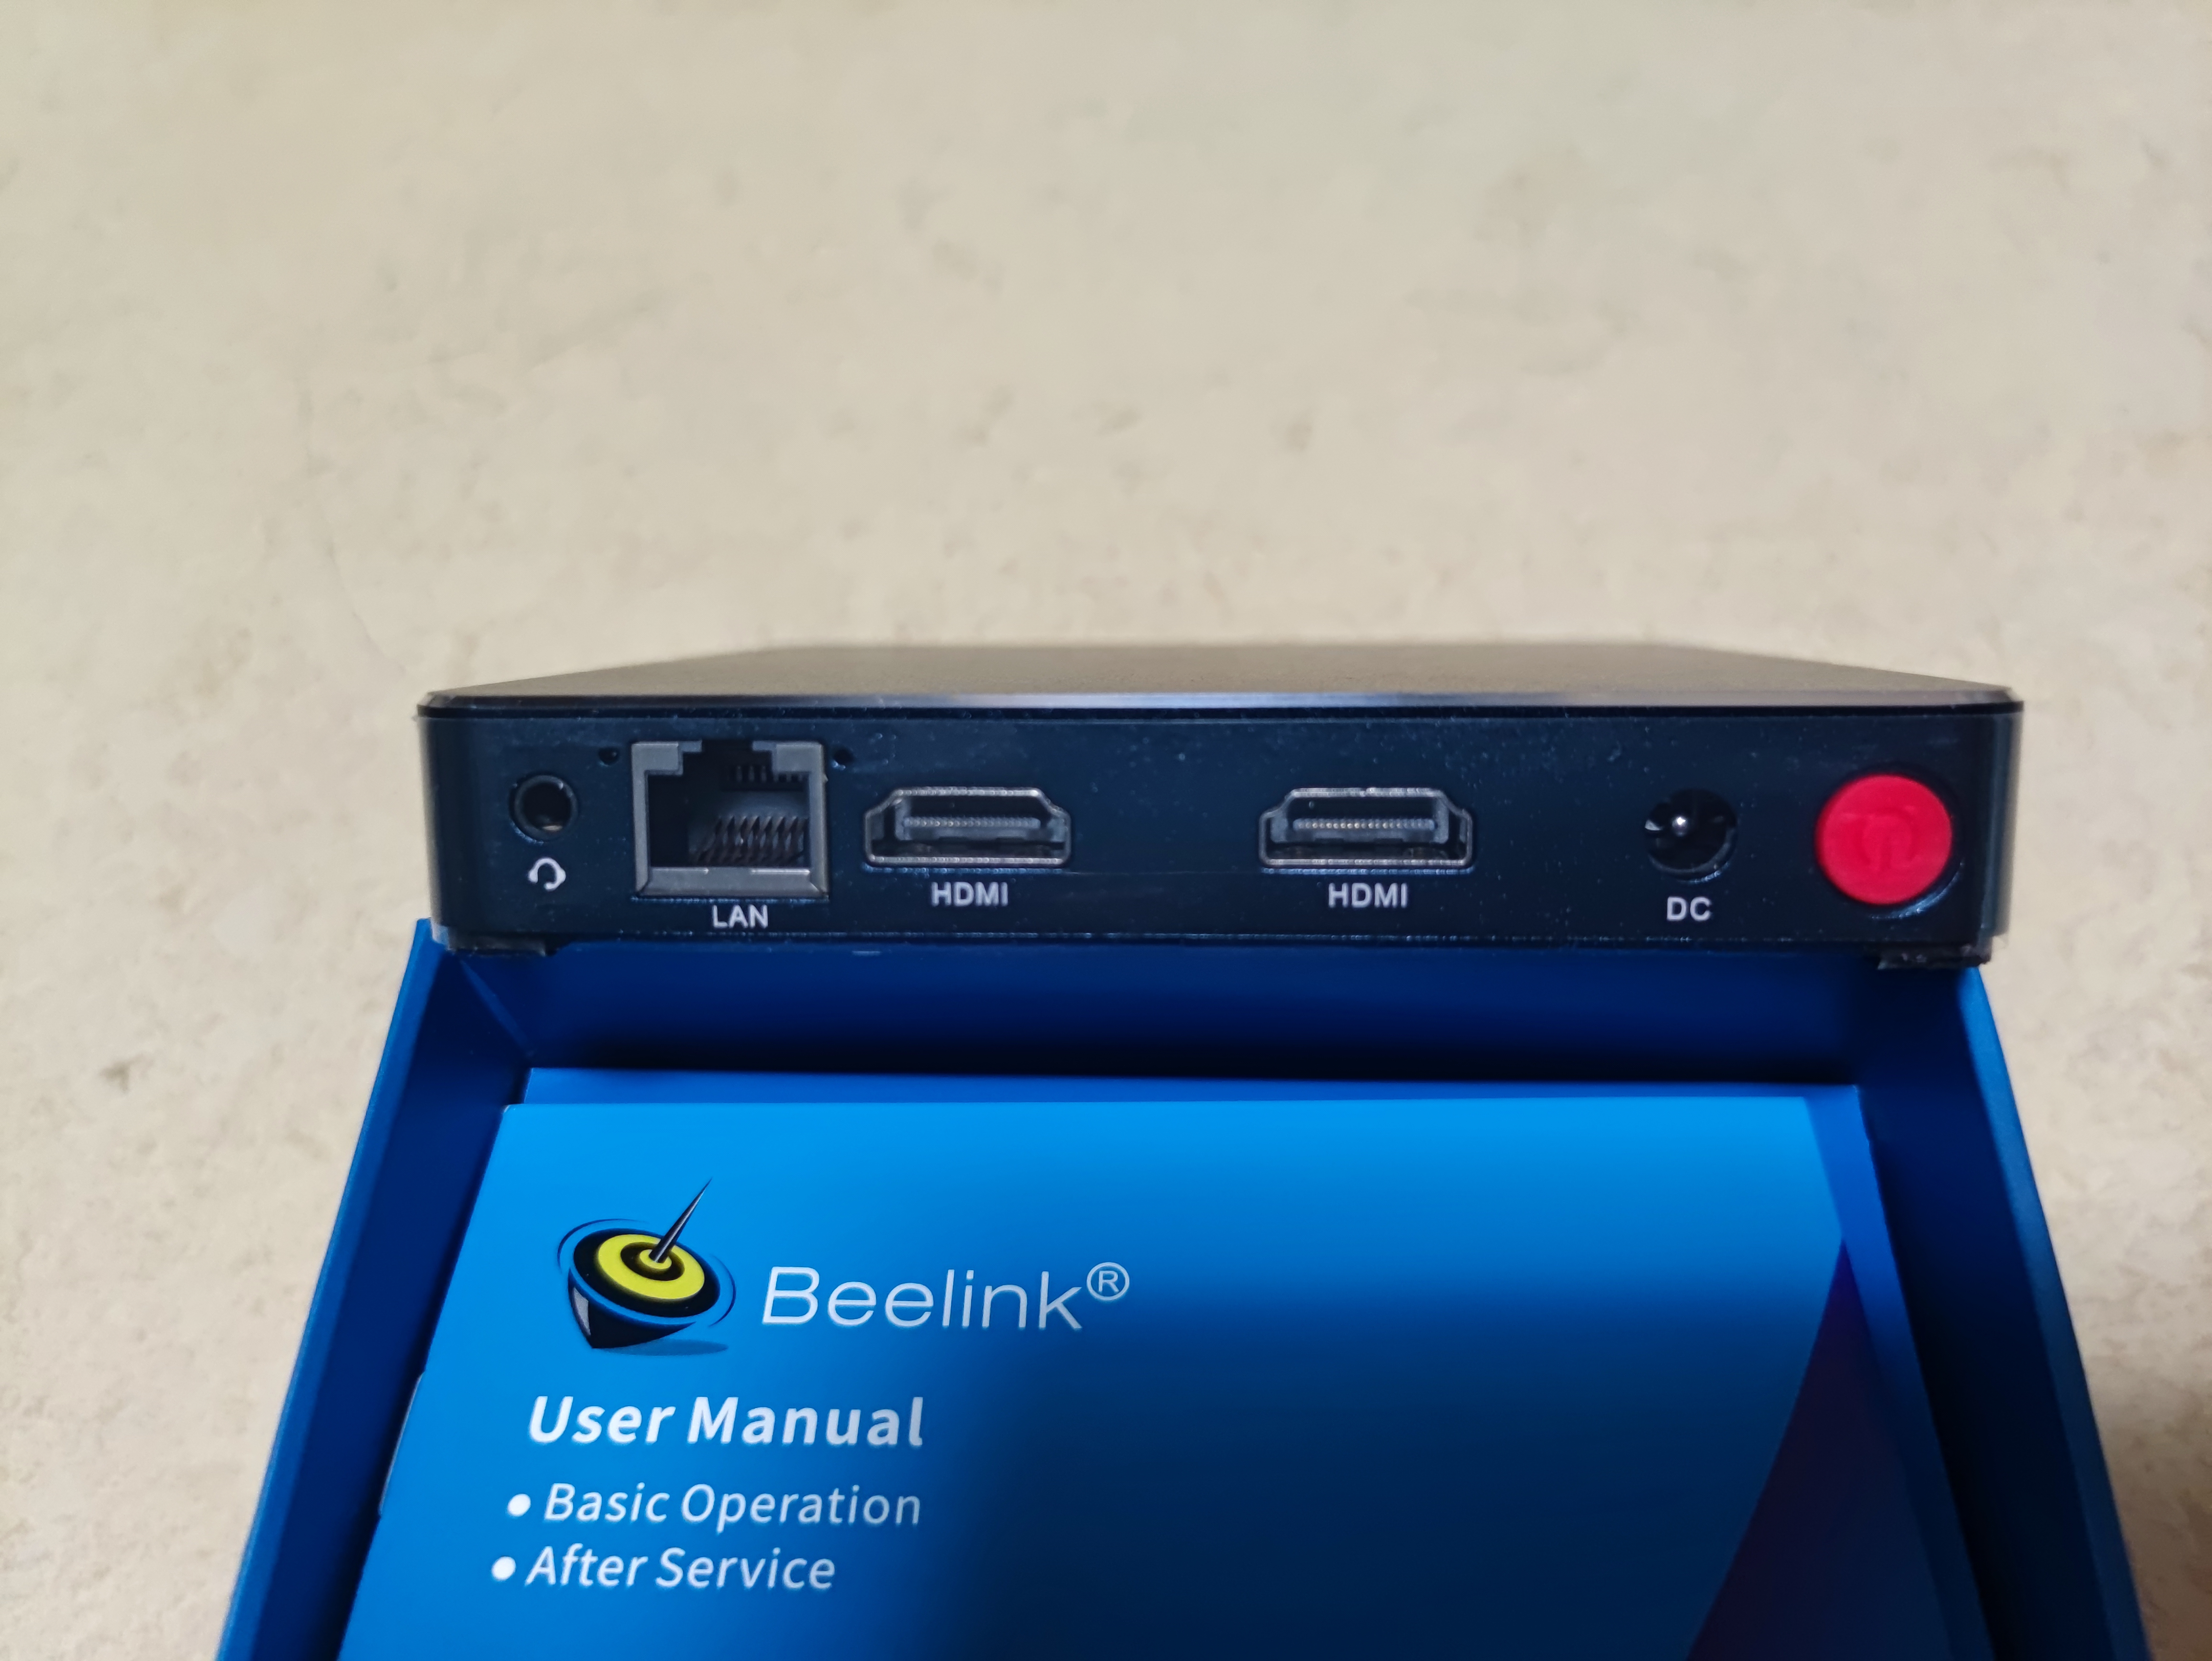 Beelink Gemini M 윈도우 미니PC J4125 구입 및 간단사용기